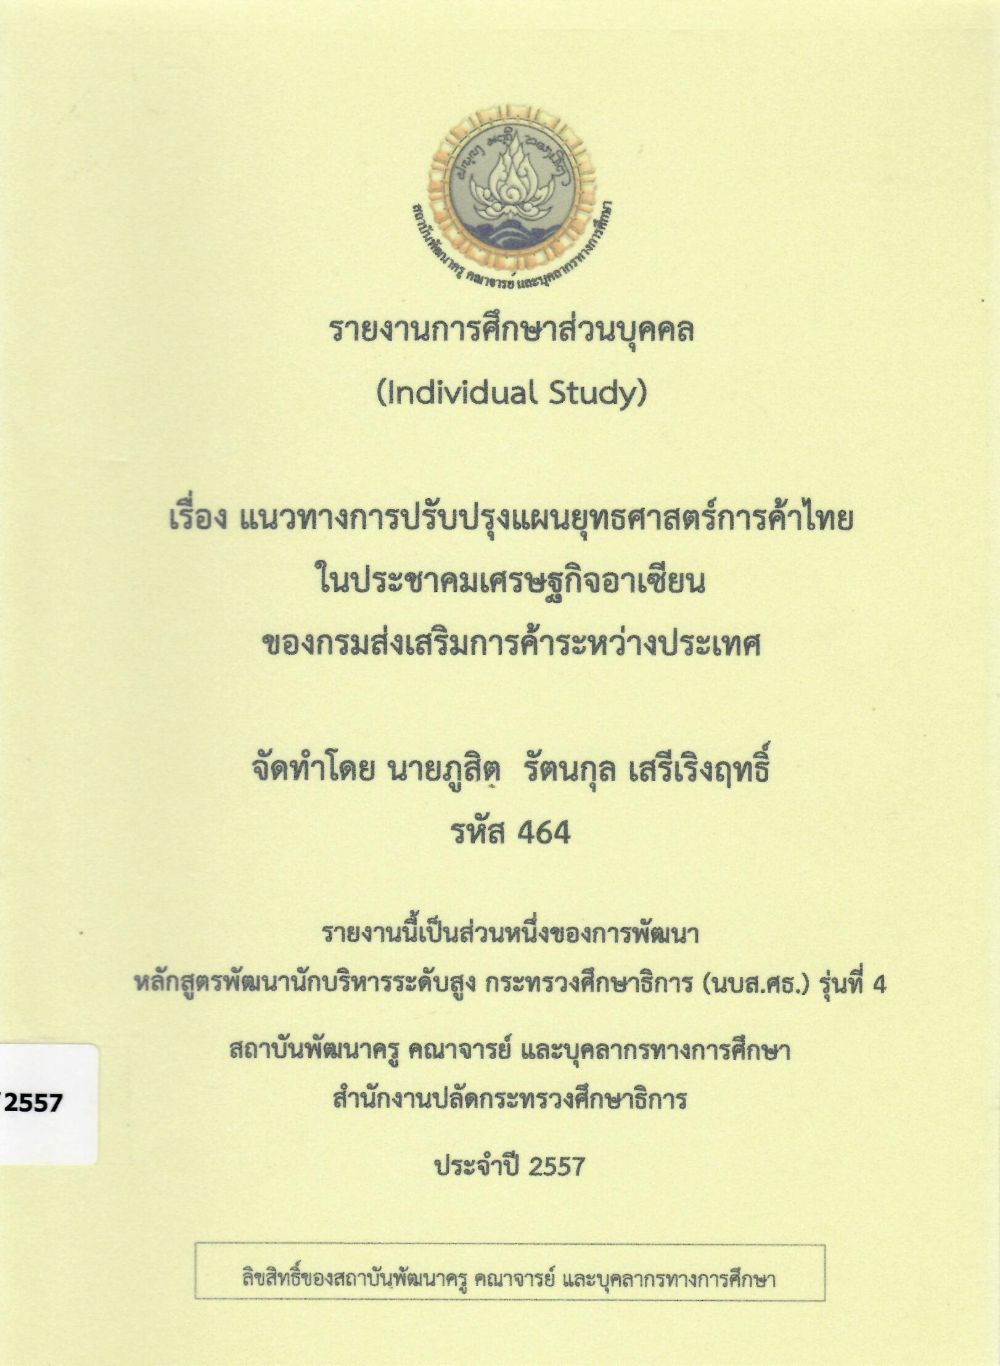  แนวทางการปรับปรุงแผนยุทธศาสตร์การค้าไทยในประชาคมเศรษฐกิจอาเซียน ของกรมส่งเสริมการค้าระหว่างประเทศ : รายงานการศึกษาส่วนบุคคล (Individual Study)/ ภูสิต รัตนกุล เสรีเริงฤทธิ์